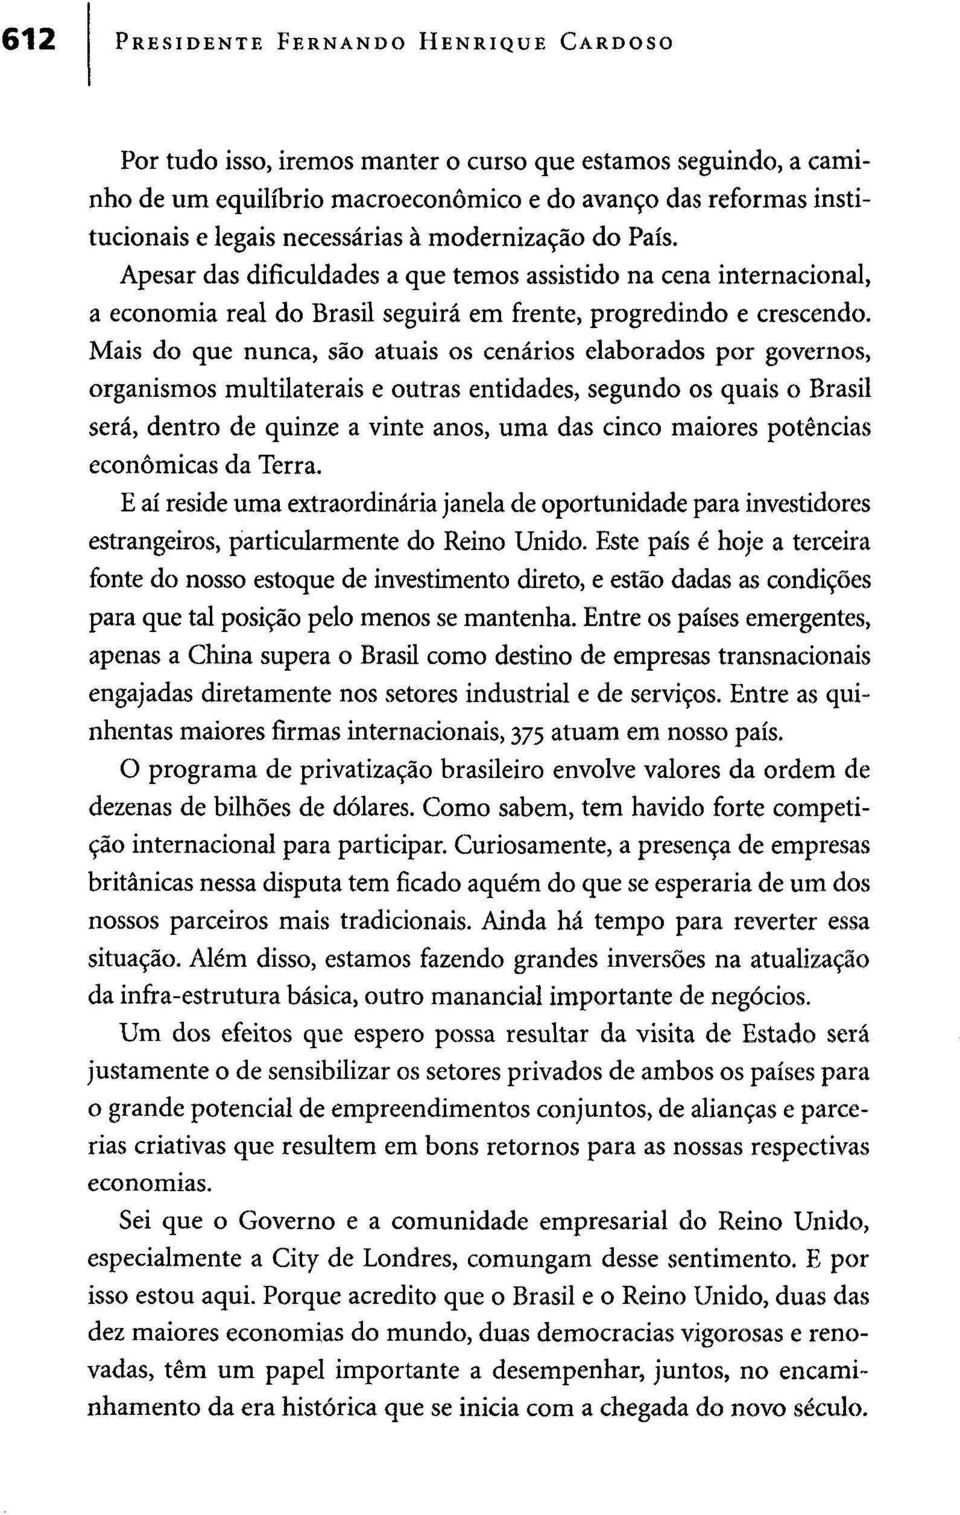 Mais do que nunca, são atuais os cenários elaborados por governos, organismos multilaterais e outras entidades, segundo os quais o Brasil será, dentro de quinze a vinte anos, uma das cinco maiores